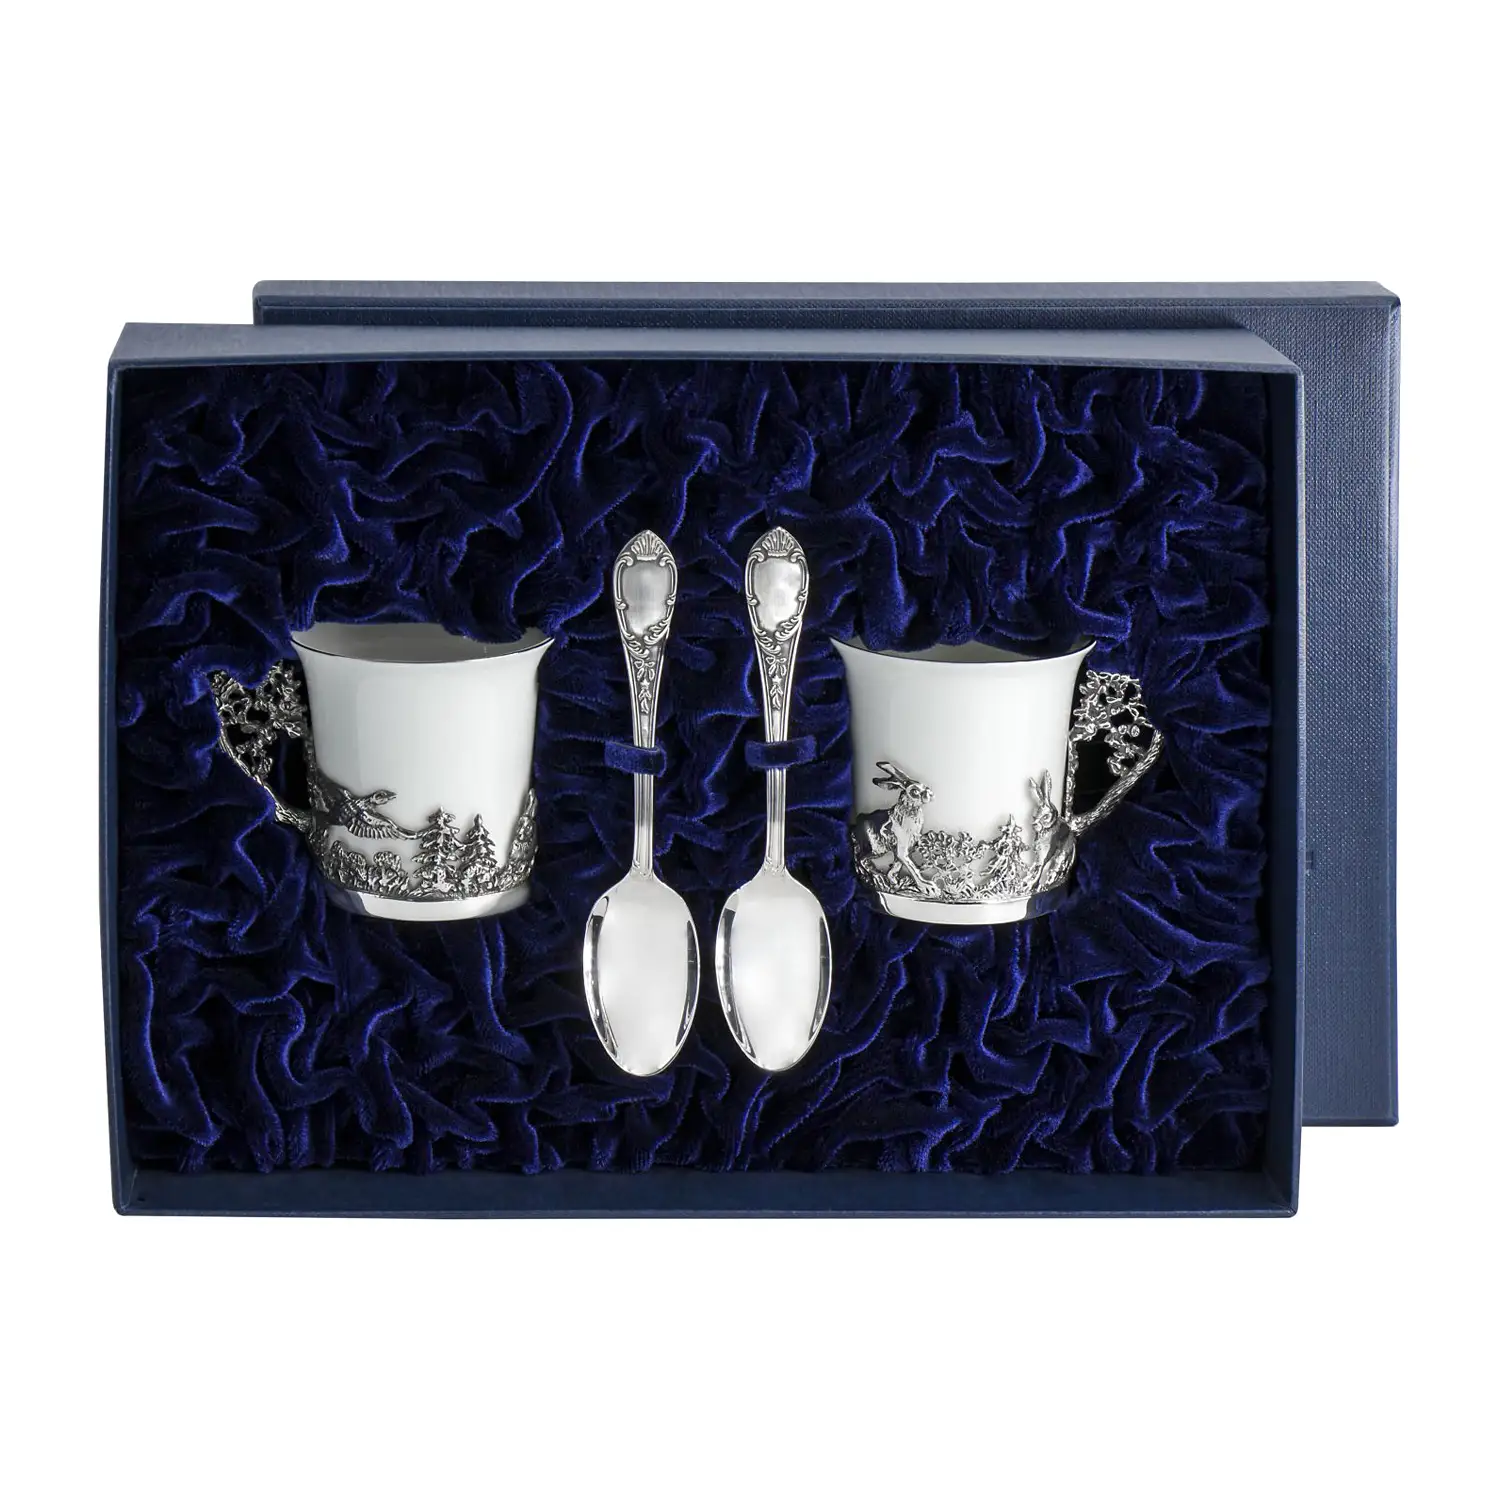 Набор кофейных чашек Зайцы: ложка, чашка (Серебро 925) набор кофейных чашек богема серебро 925